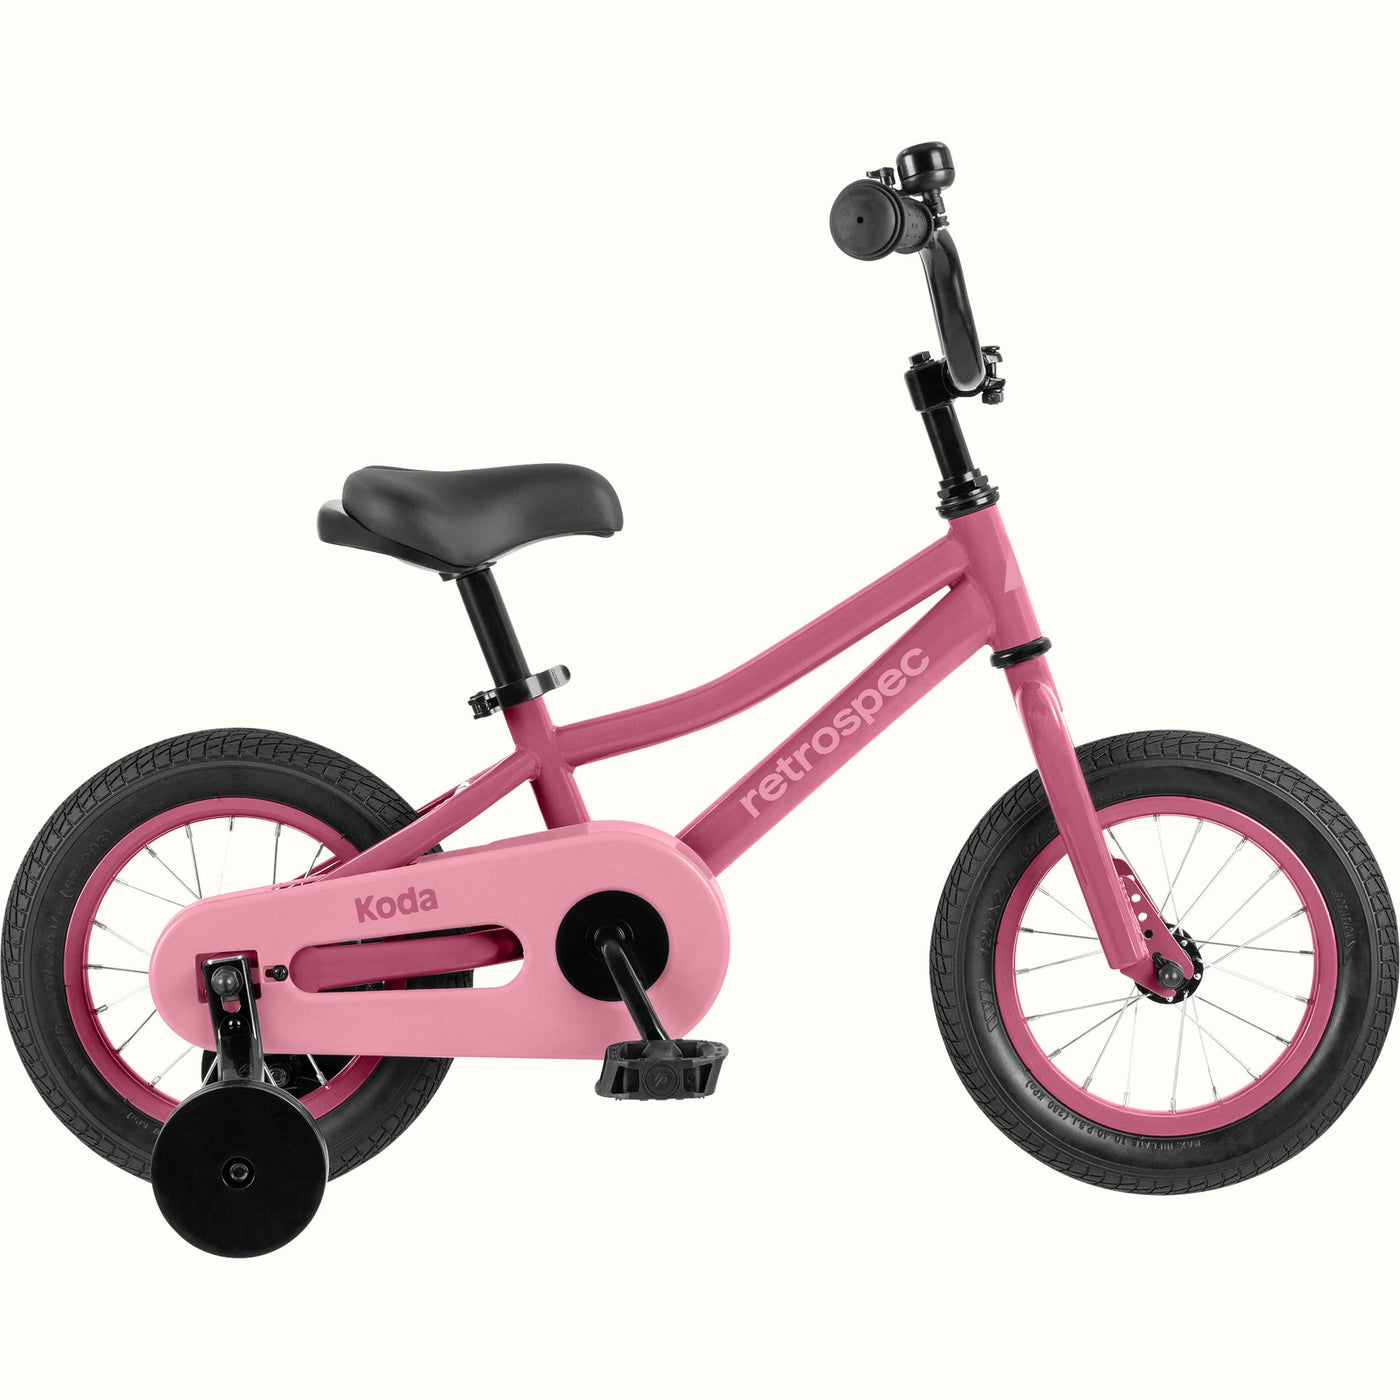 Koda 12” Kids’ Bike (2-3 years) | Flamingo